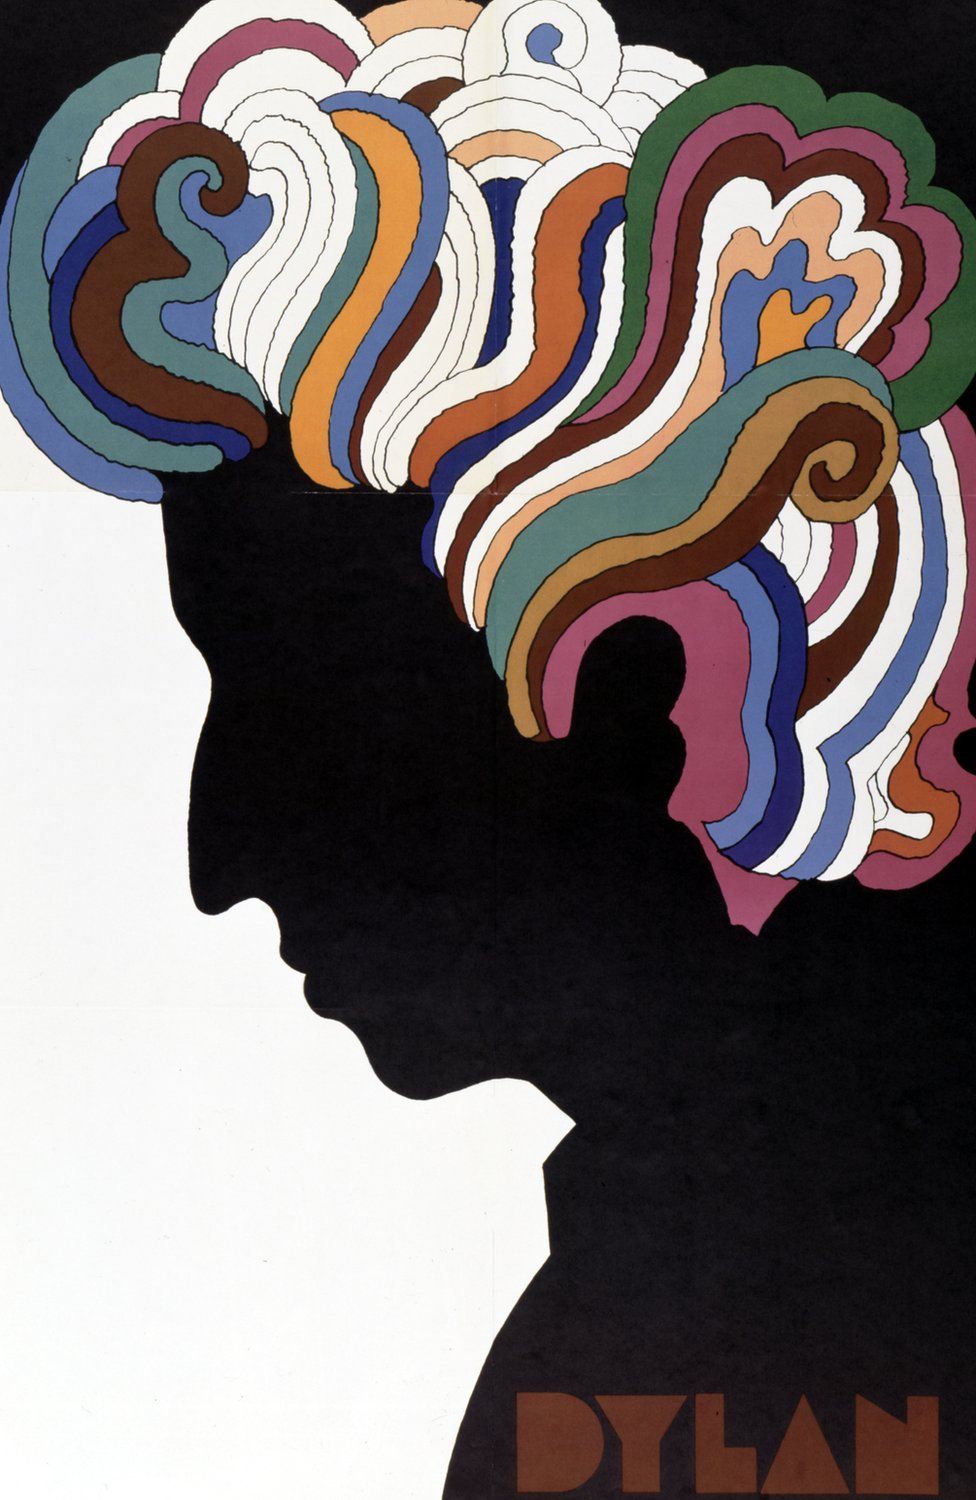 Плакат Боба Дилана, разработанный Милтоном Глейзером в качестве вставки к альбому "Greatest Hits Боба Дилана", который был выпущен 27 марта 1967 года